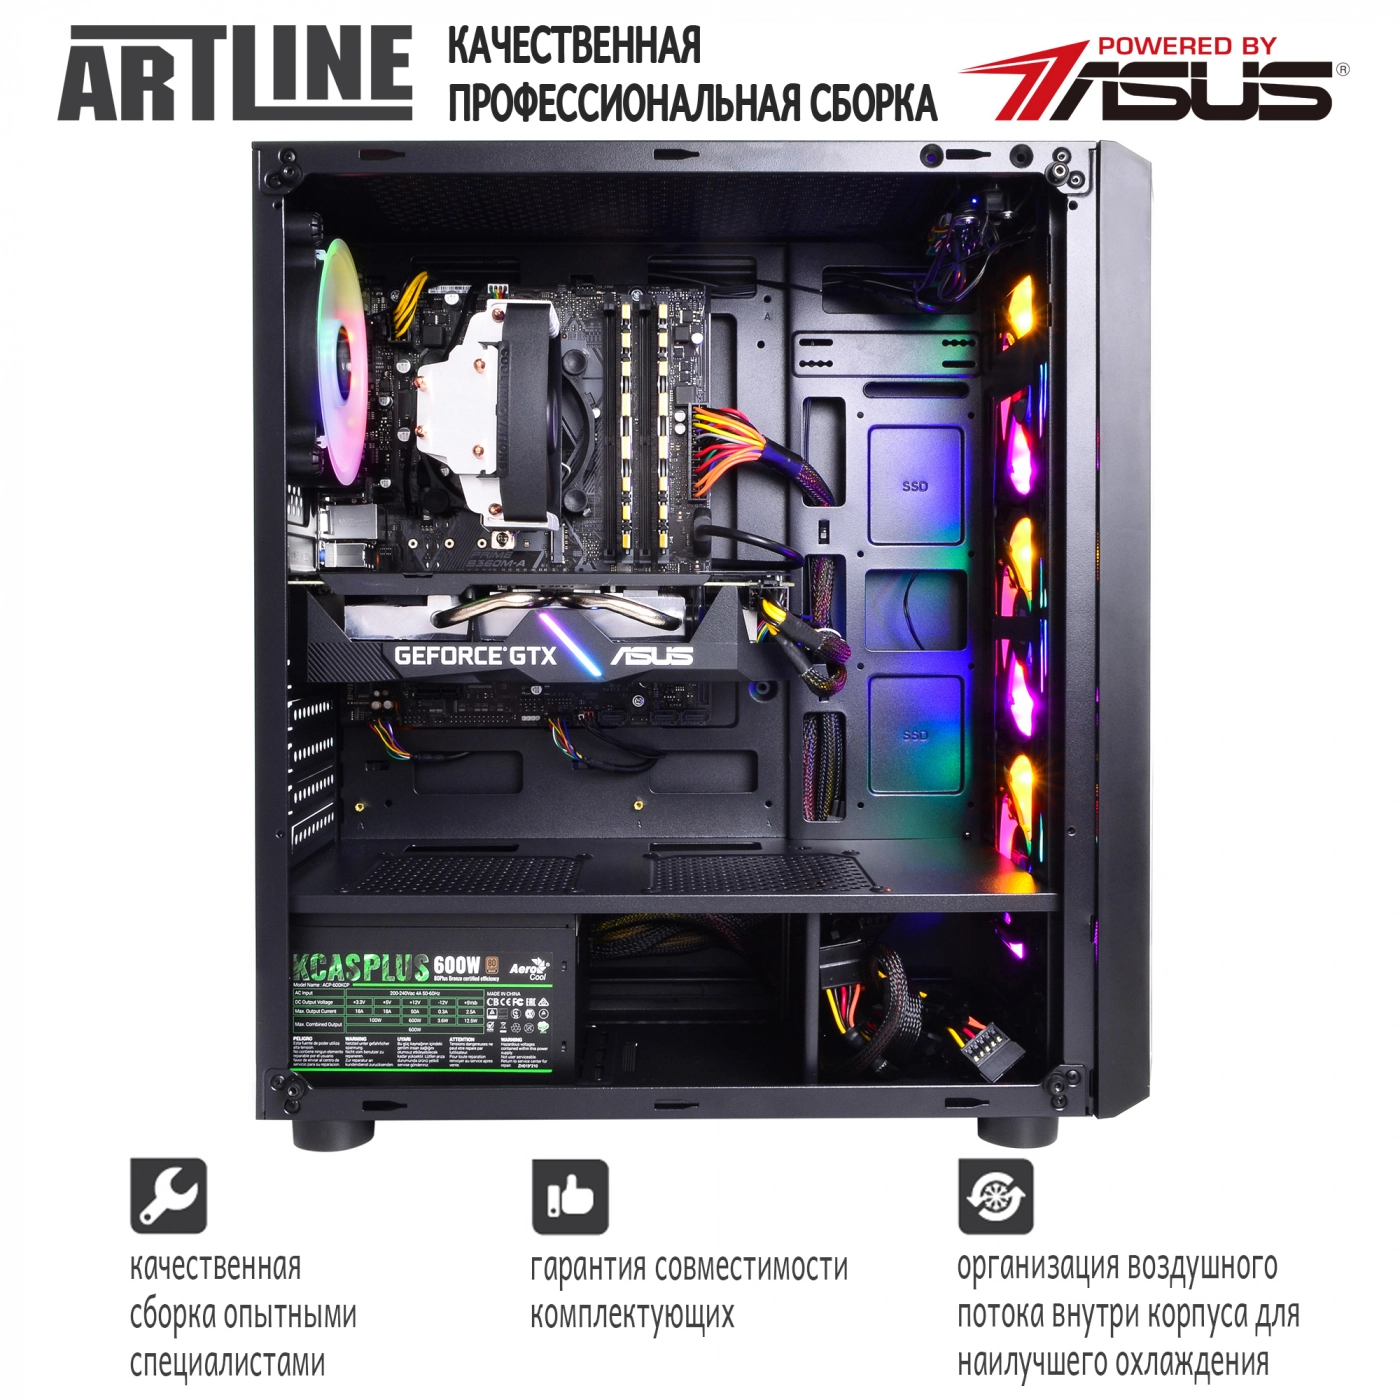 Купить Компьютер ARTLINE Gaming X61v11 - фото 9